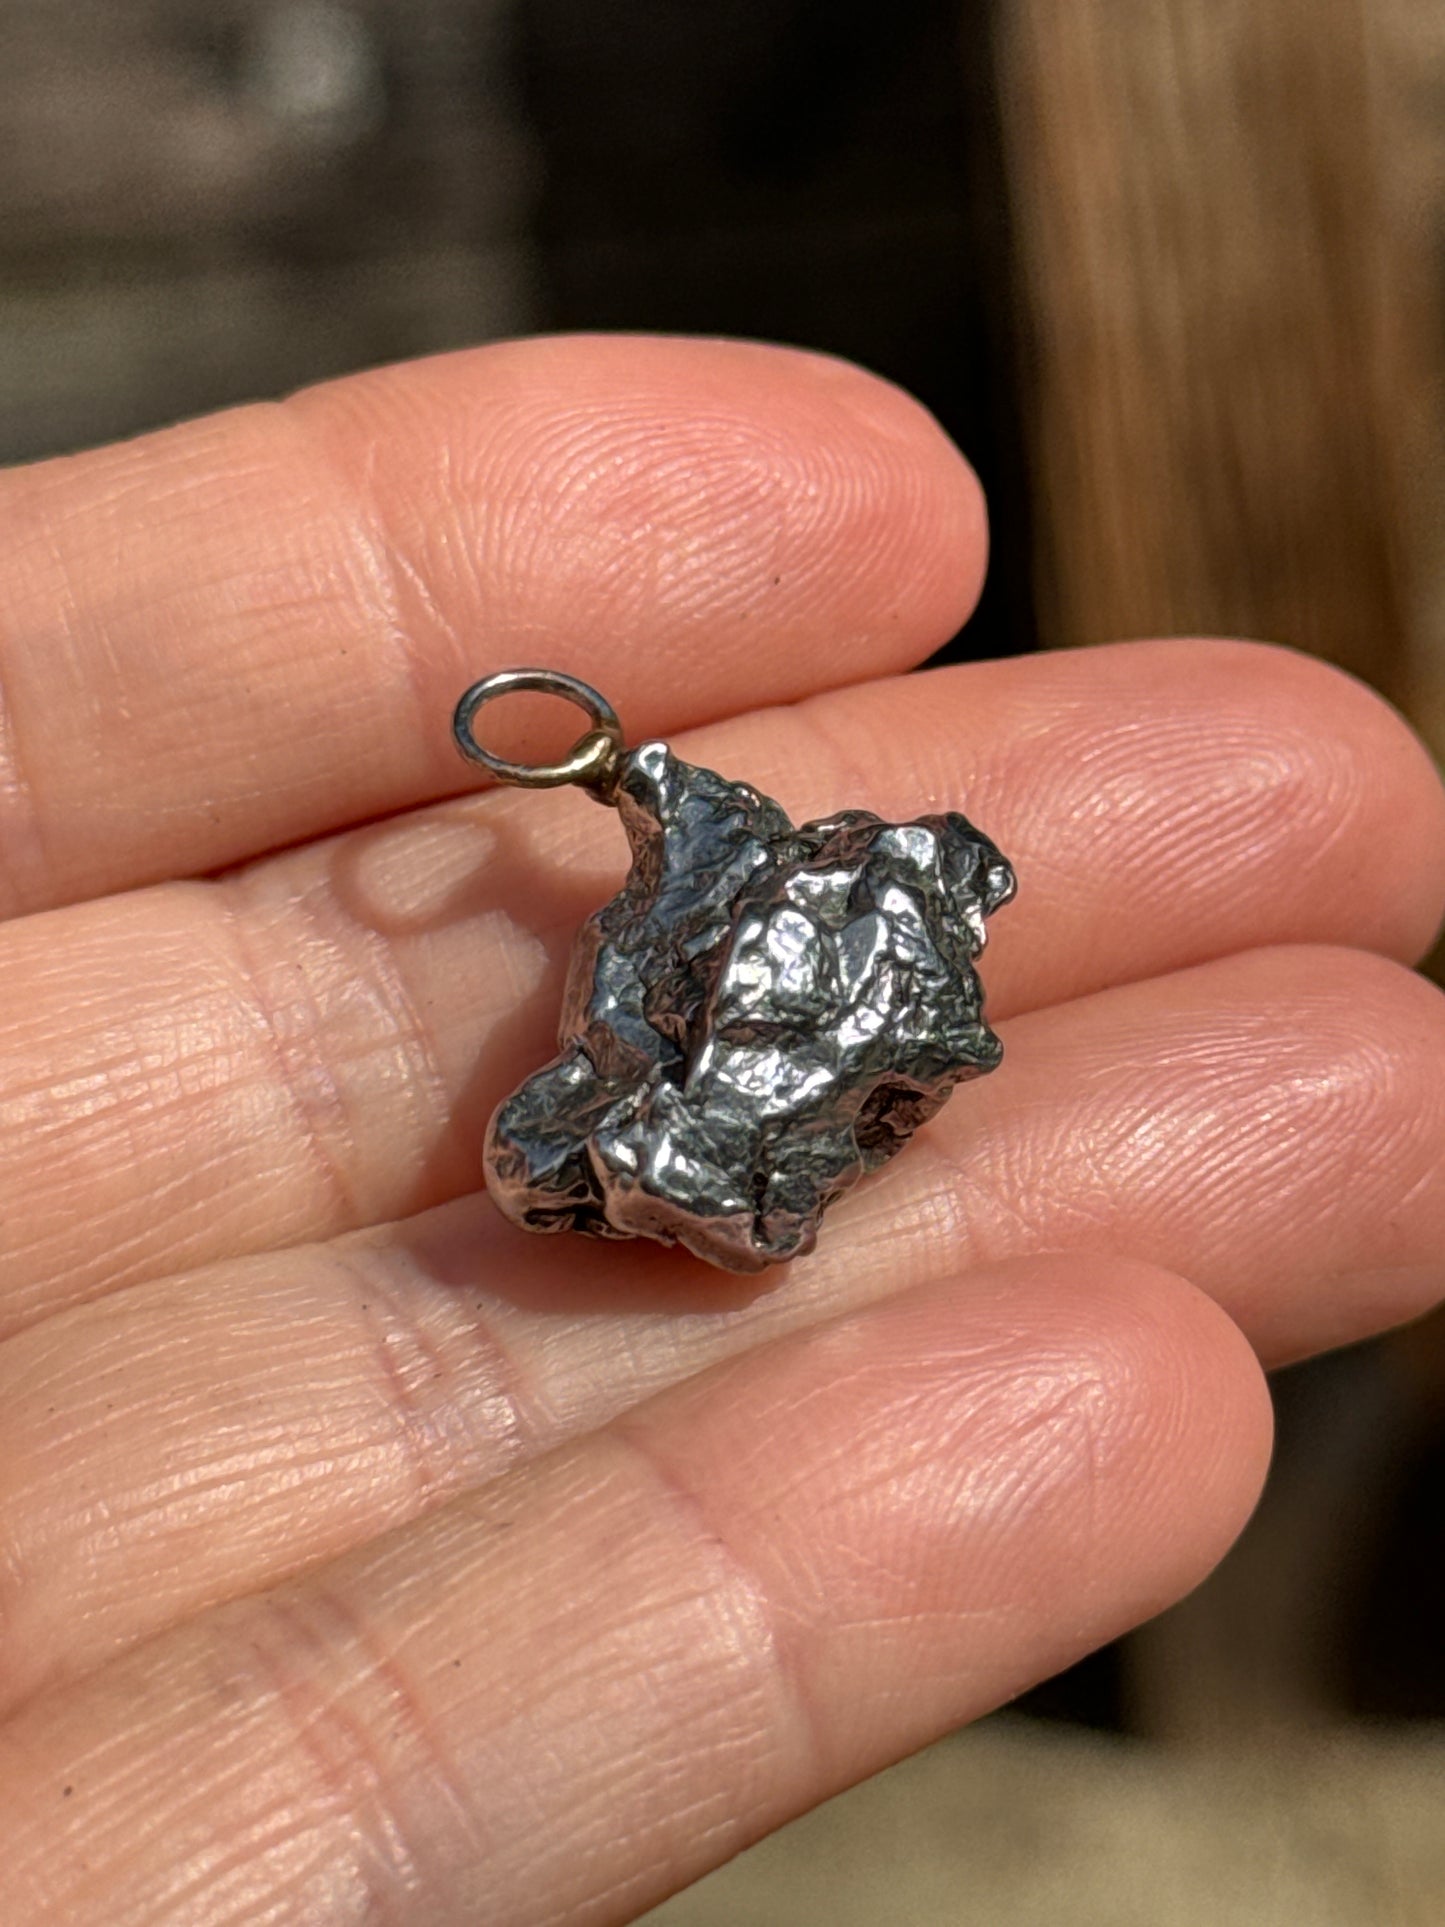 Iron Meteorite Pendant, 9g Argentina